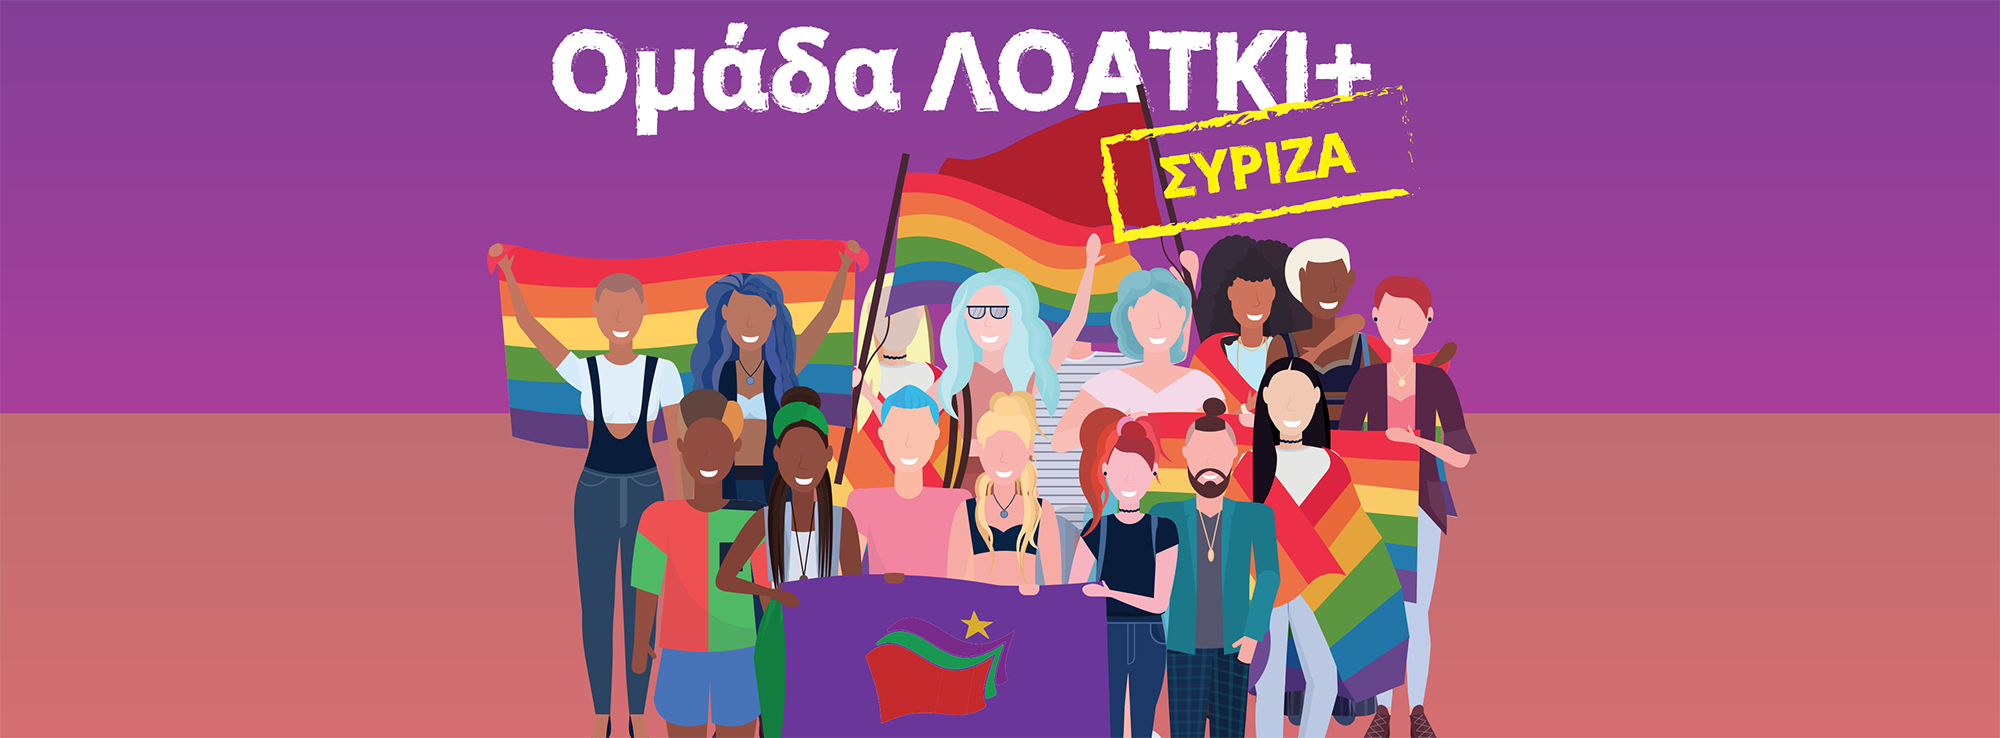 Ομάδα ΛΟΑΤΚΙ+ του Τομέα Δικαιωμάτων ΣΥΡΙΖΑ: Ιστορική η σημερινή καταδικαστική απόφαση Αμβρόσιου από τον Άρειο Πάγο